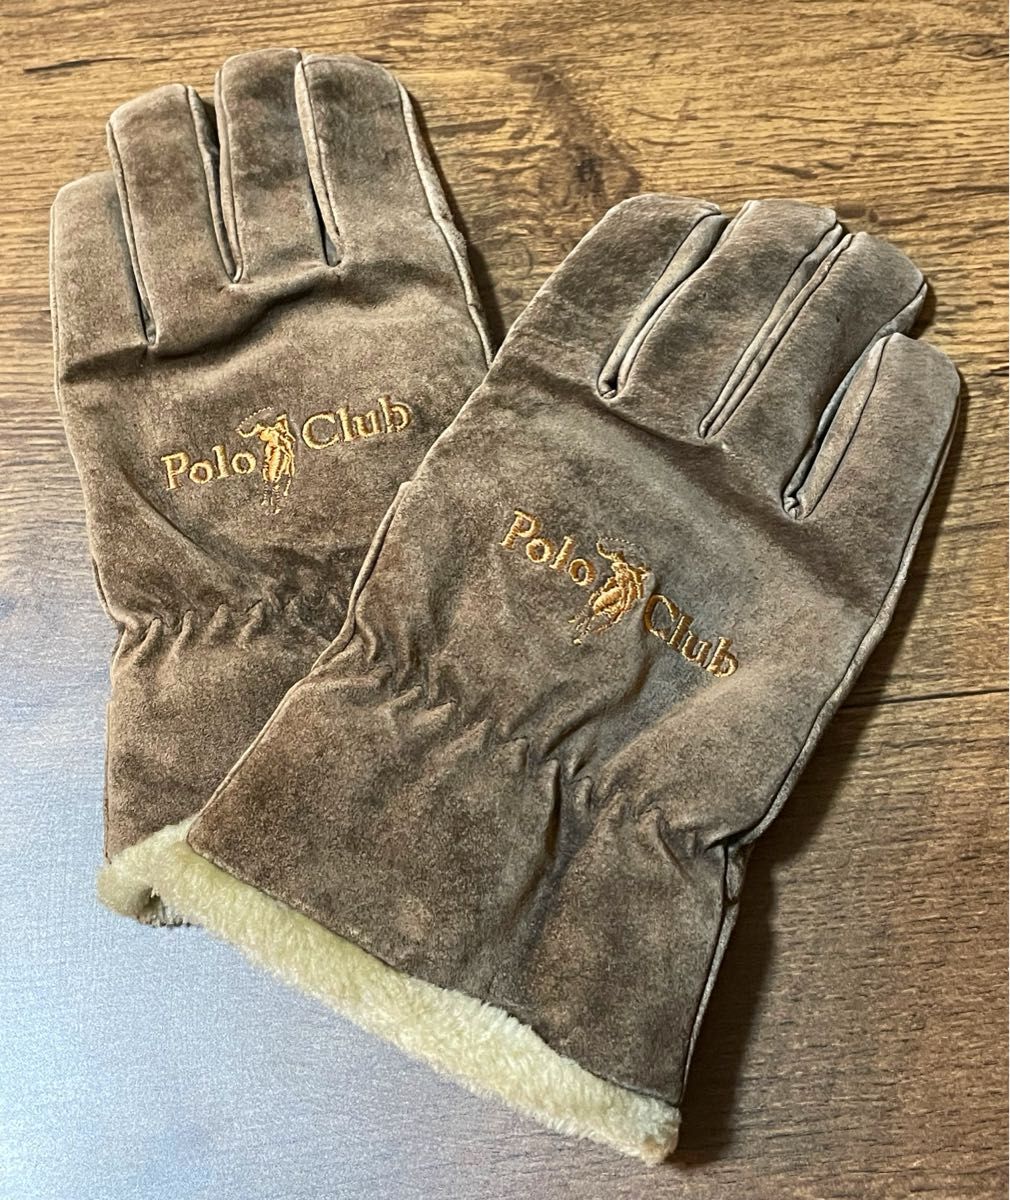 PoloClub ポロクラブ 手袋 防寒 防風 スエード調 ボア フリース素材